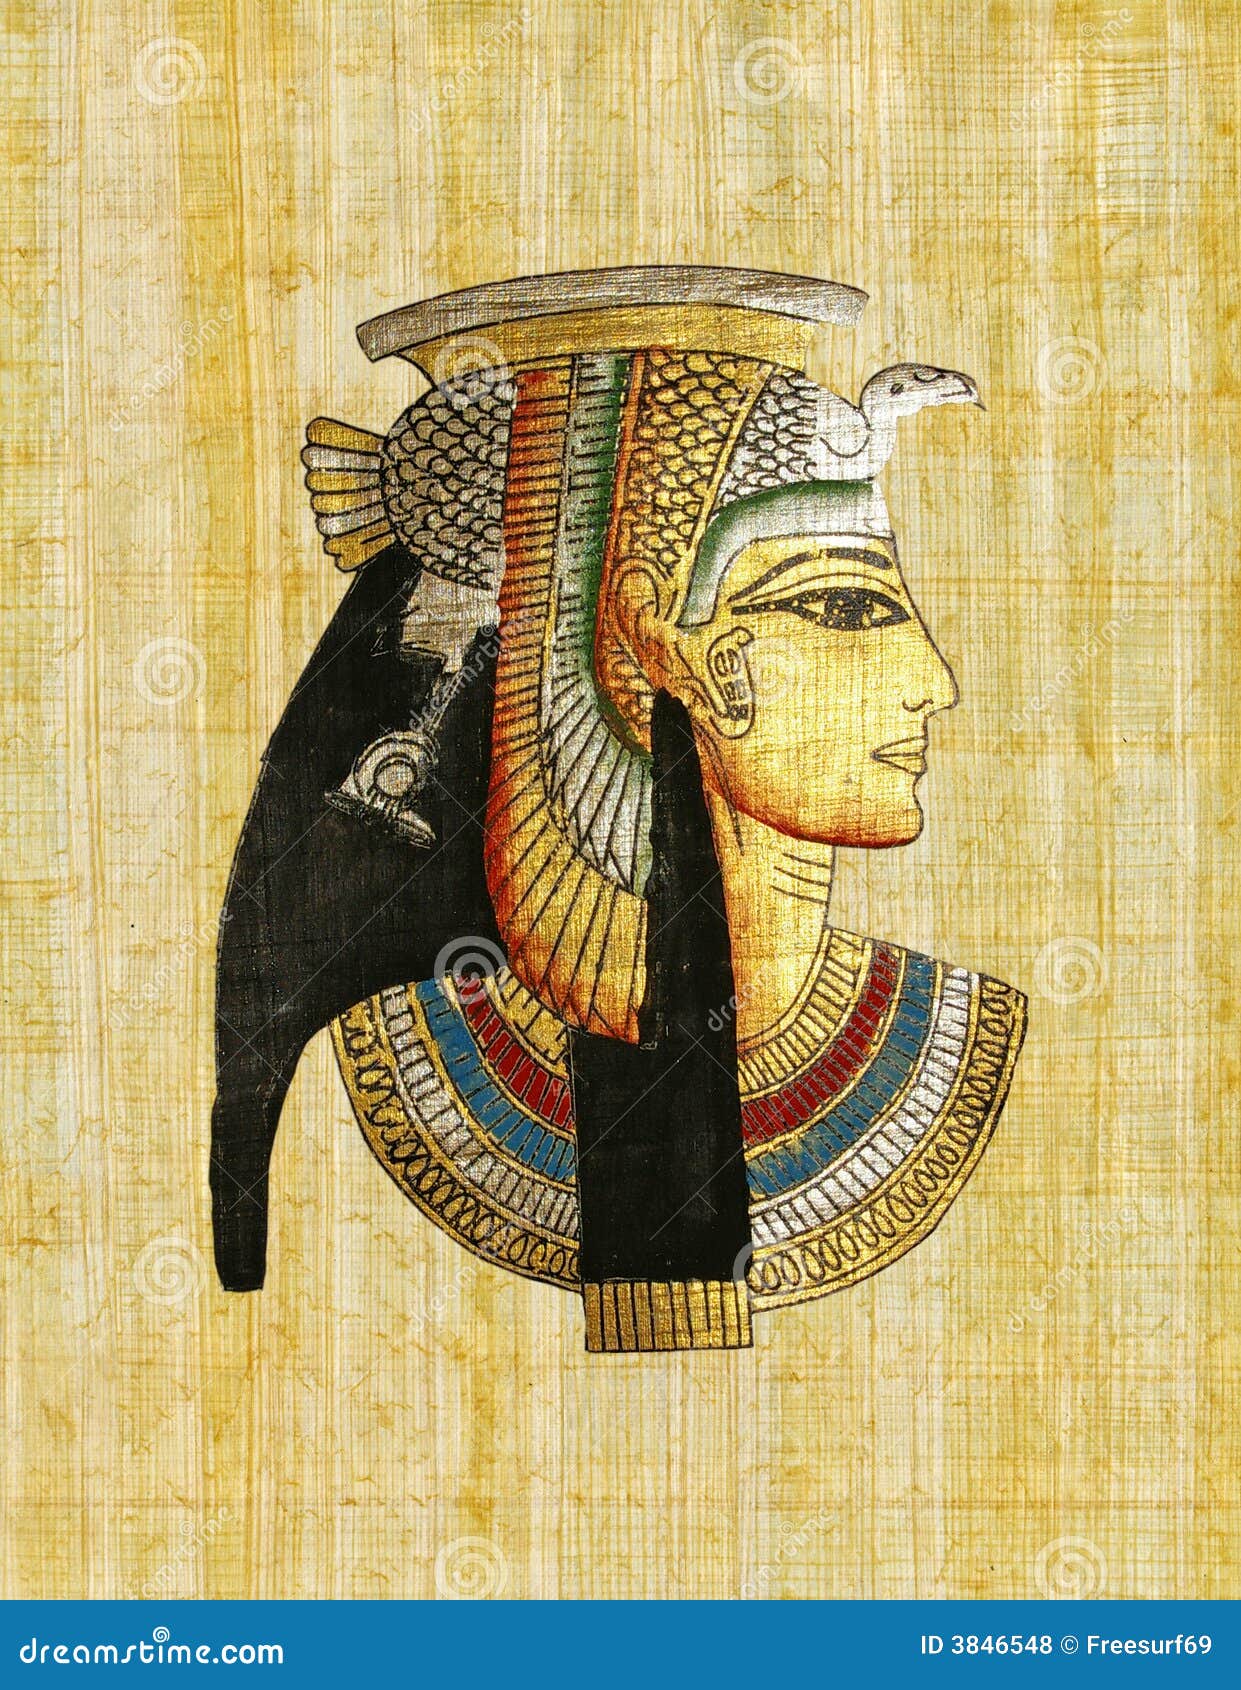 Ra Egyptian God Painting Sand Background Stock Image